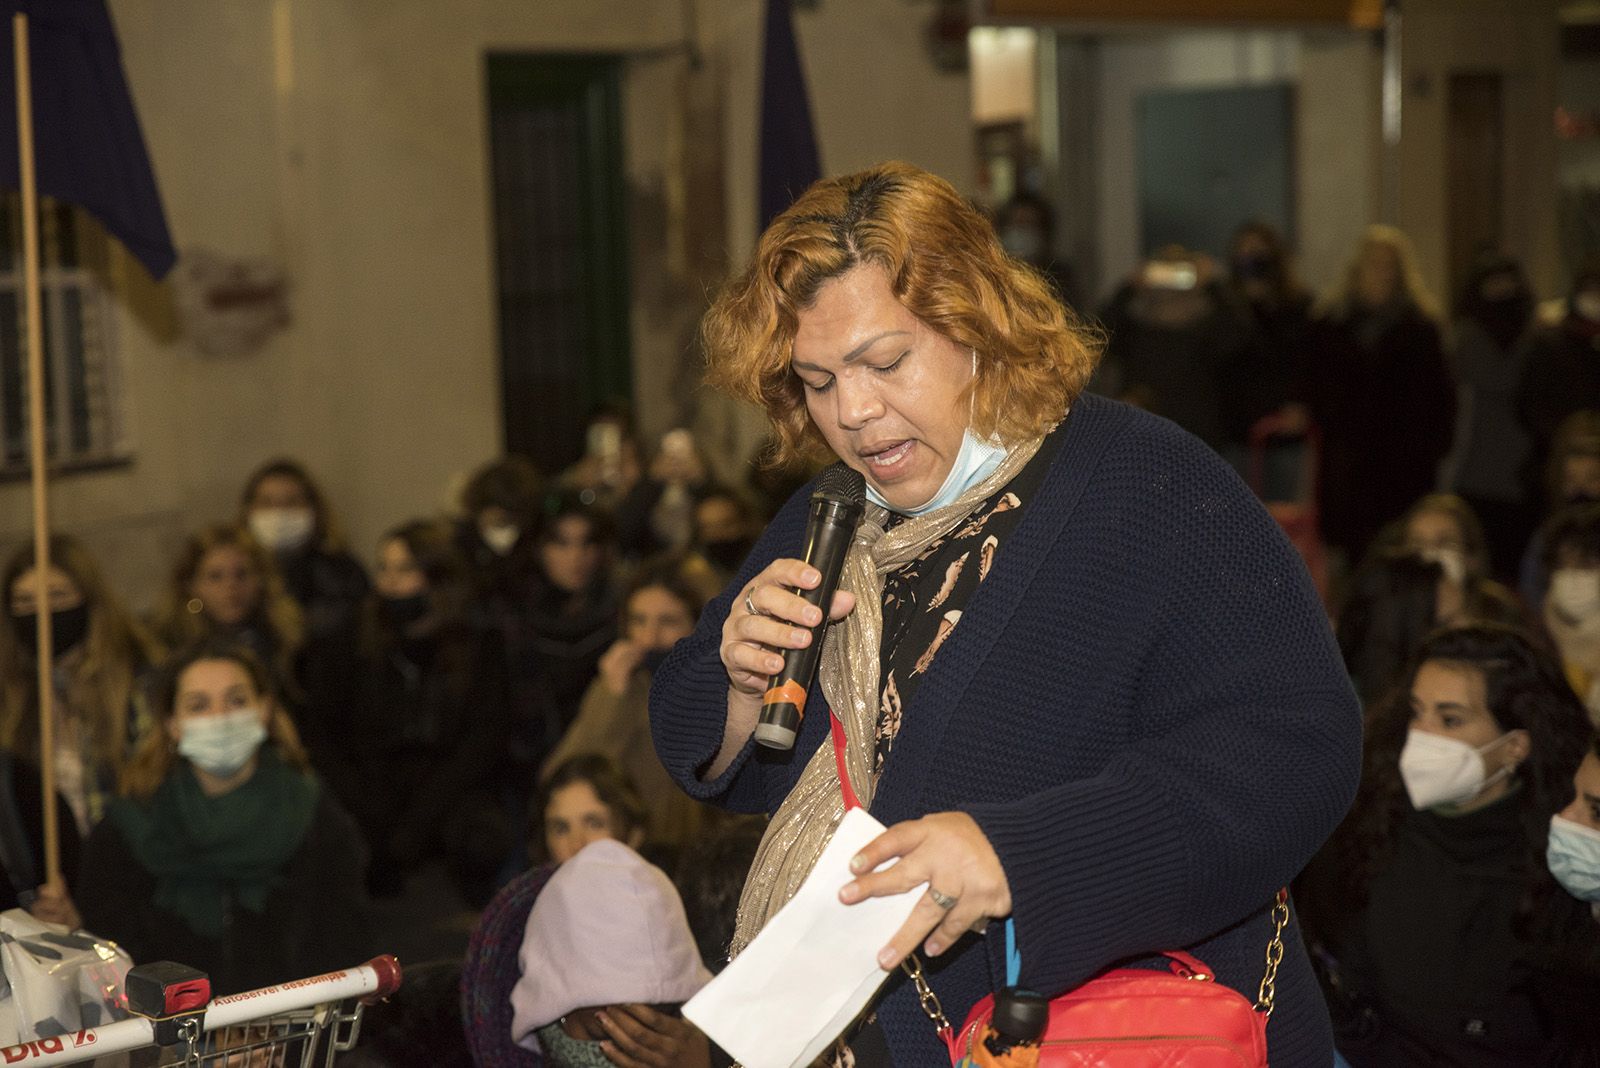 Manifestació de col·lectius feministes pel 25N. Foto: Bernat Millet.